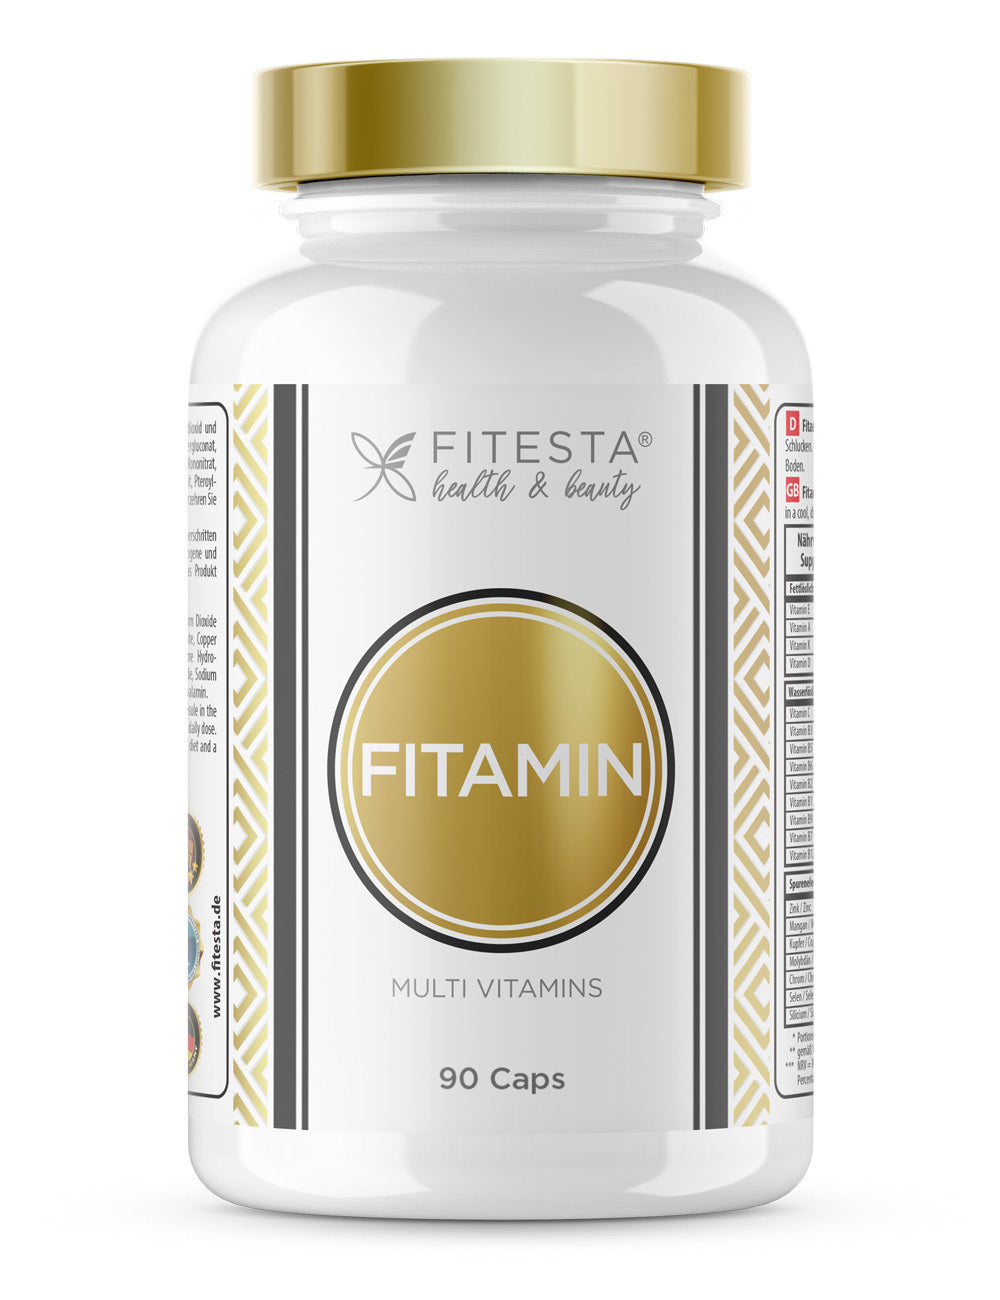 Fitamin Multi Vitamins - 90 Caps